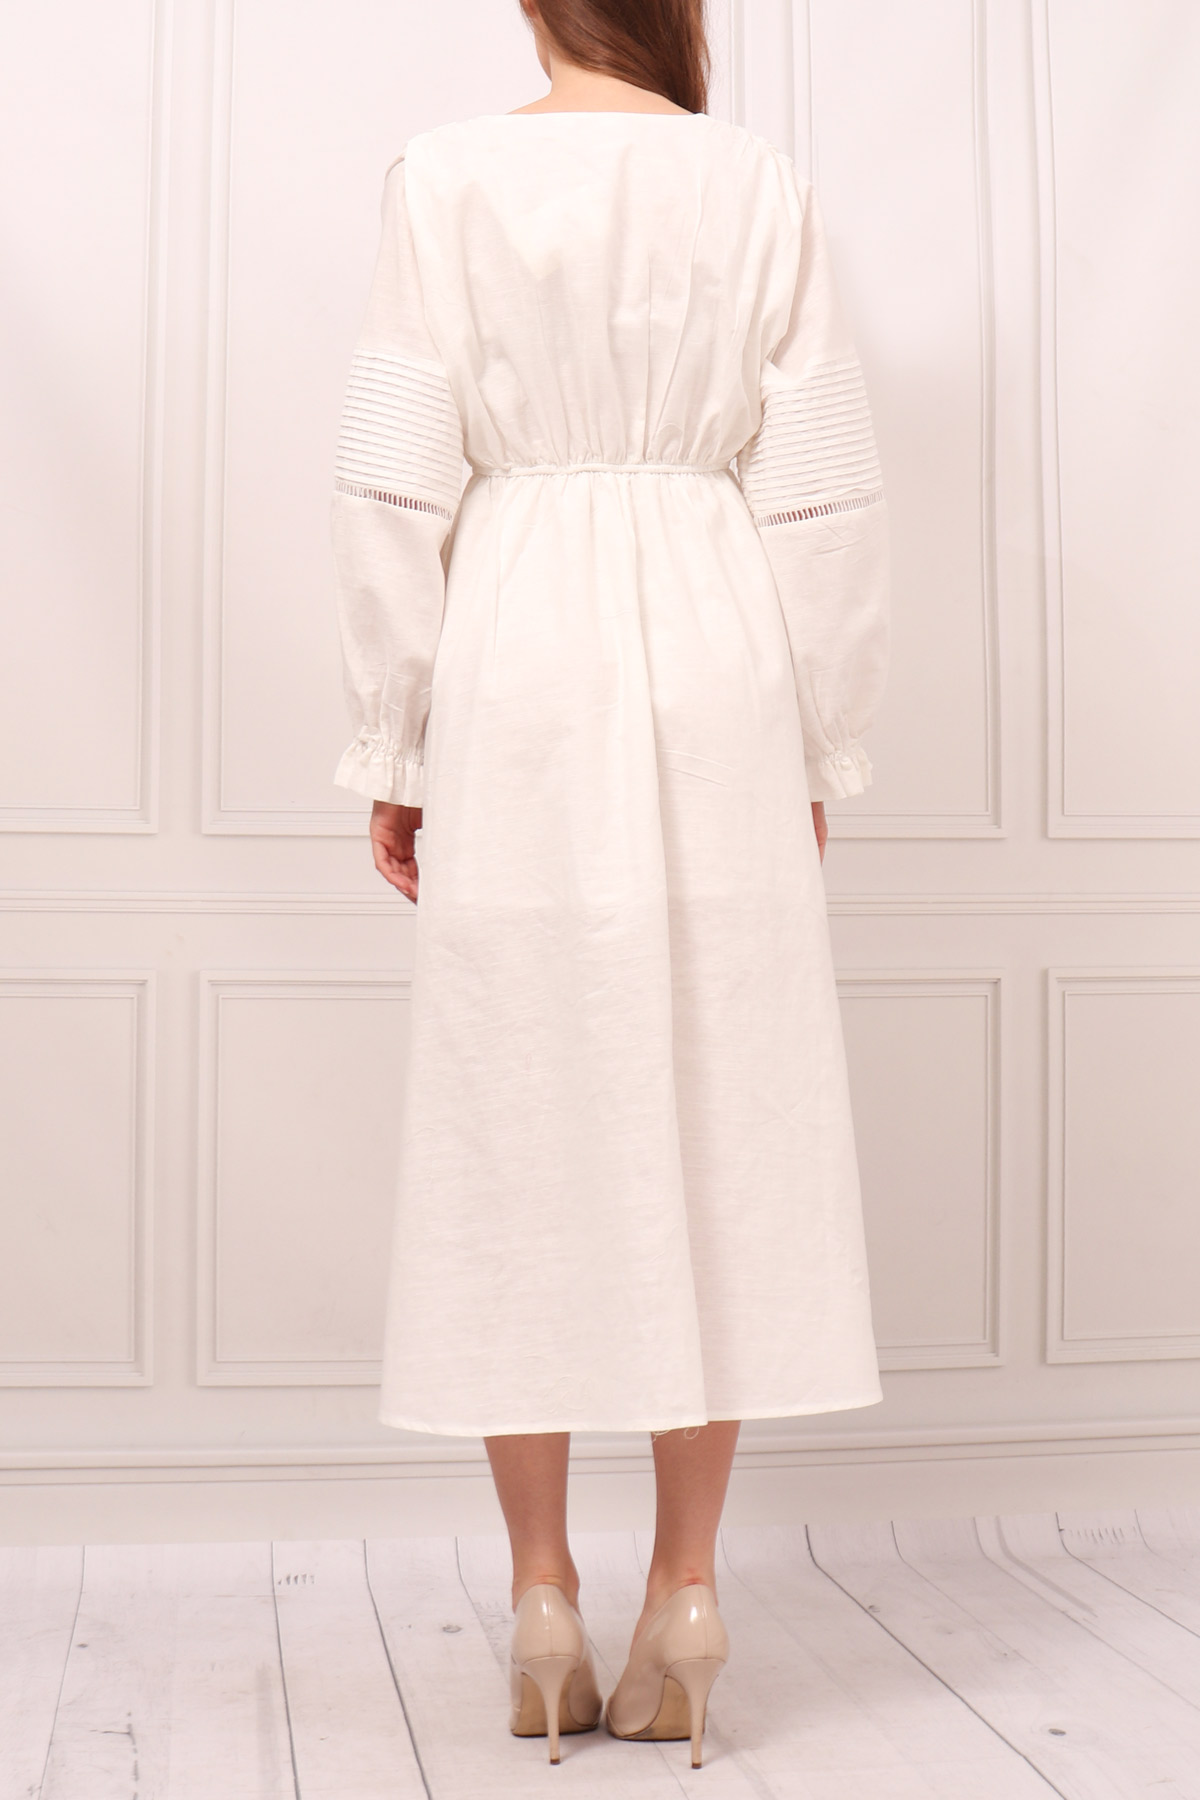 Biała sukienka maxi koszulowa guziki boho